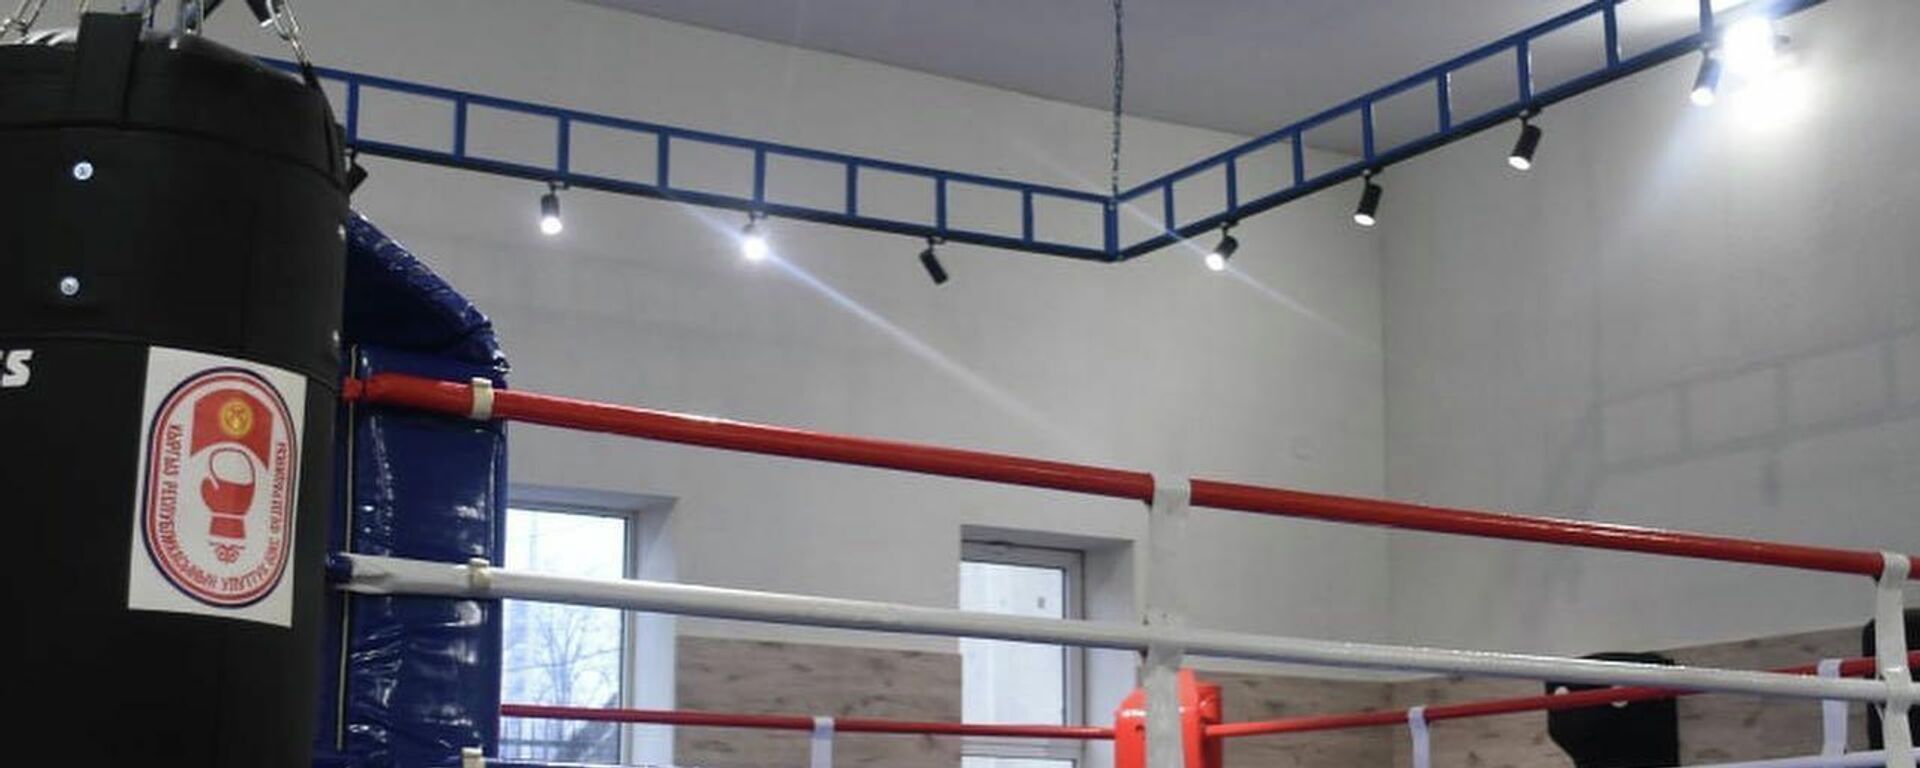 Открытие нового боксерского зала в Бишкеке - Sputnik Кыргызстан, 1920, 27.12.2021